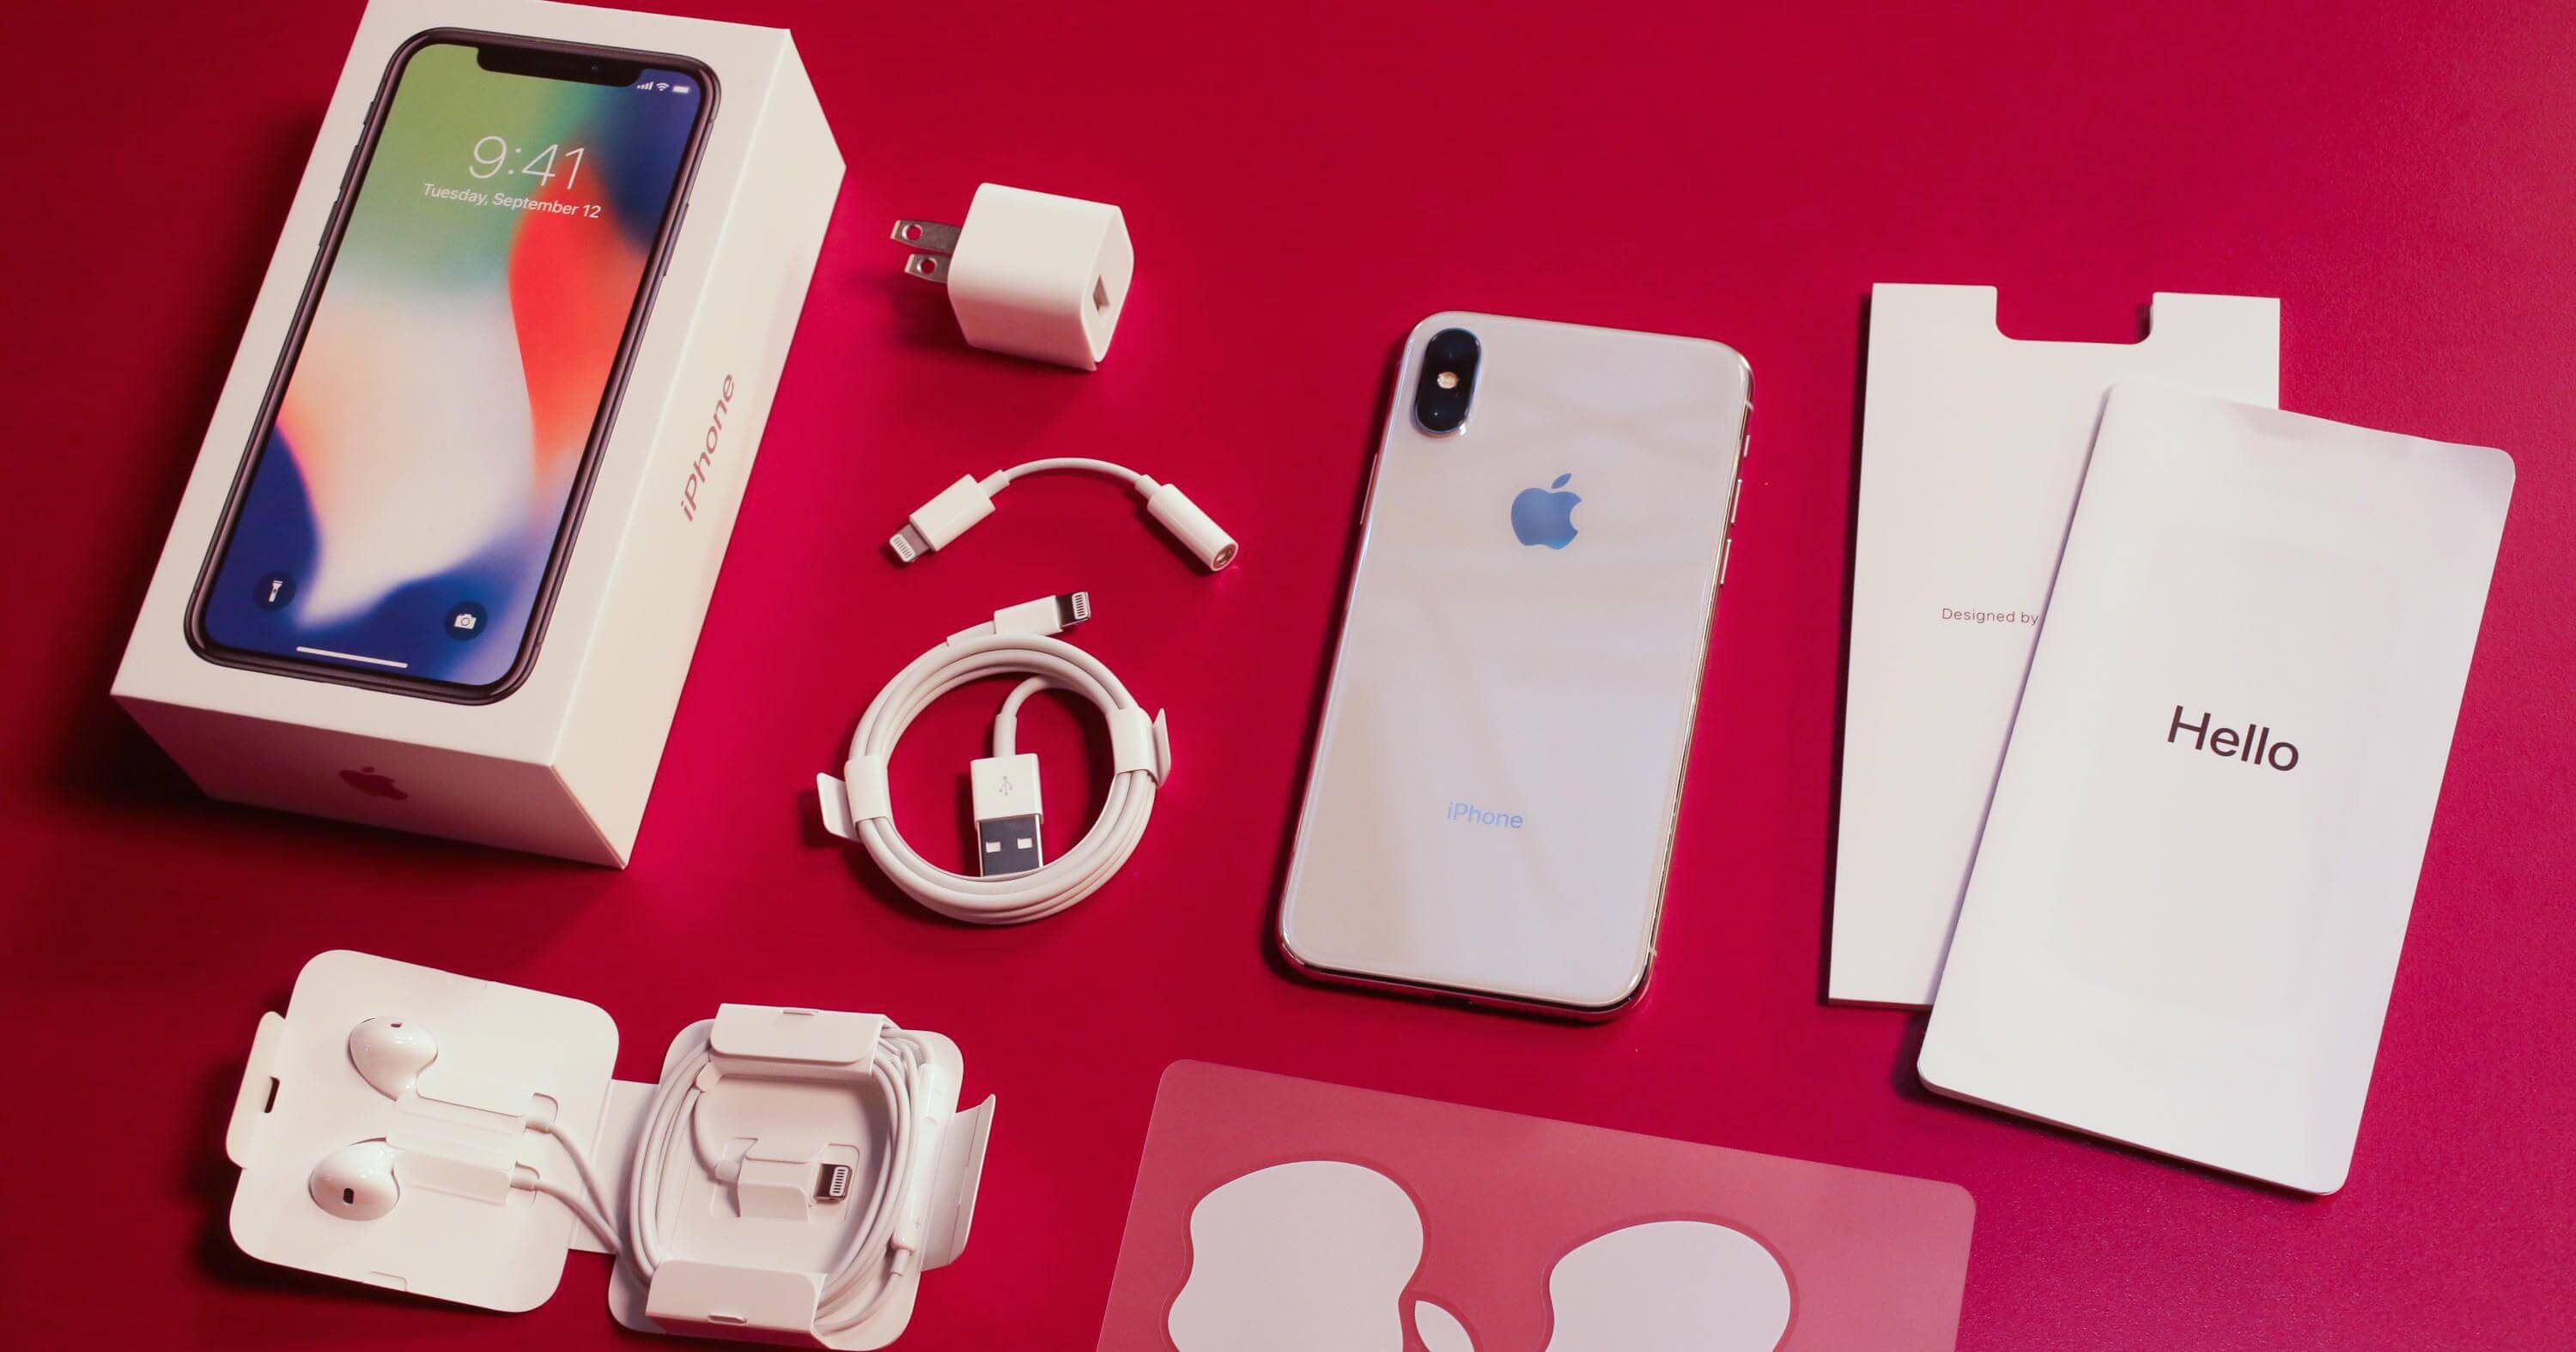 Фотографии упаковки iPhone XS показали, как изменится комплект их поставки  | AppleInsider.ru